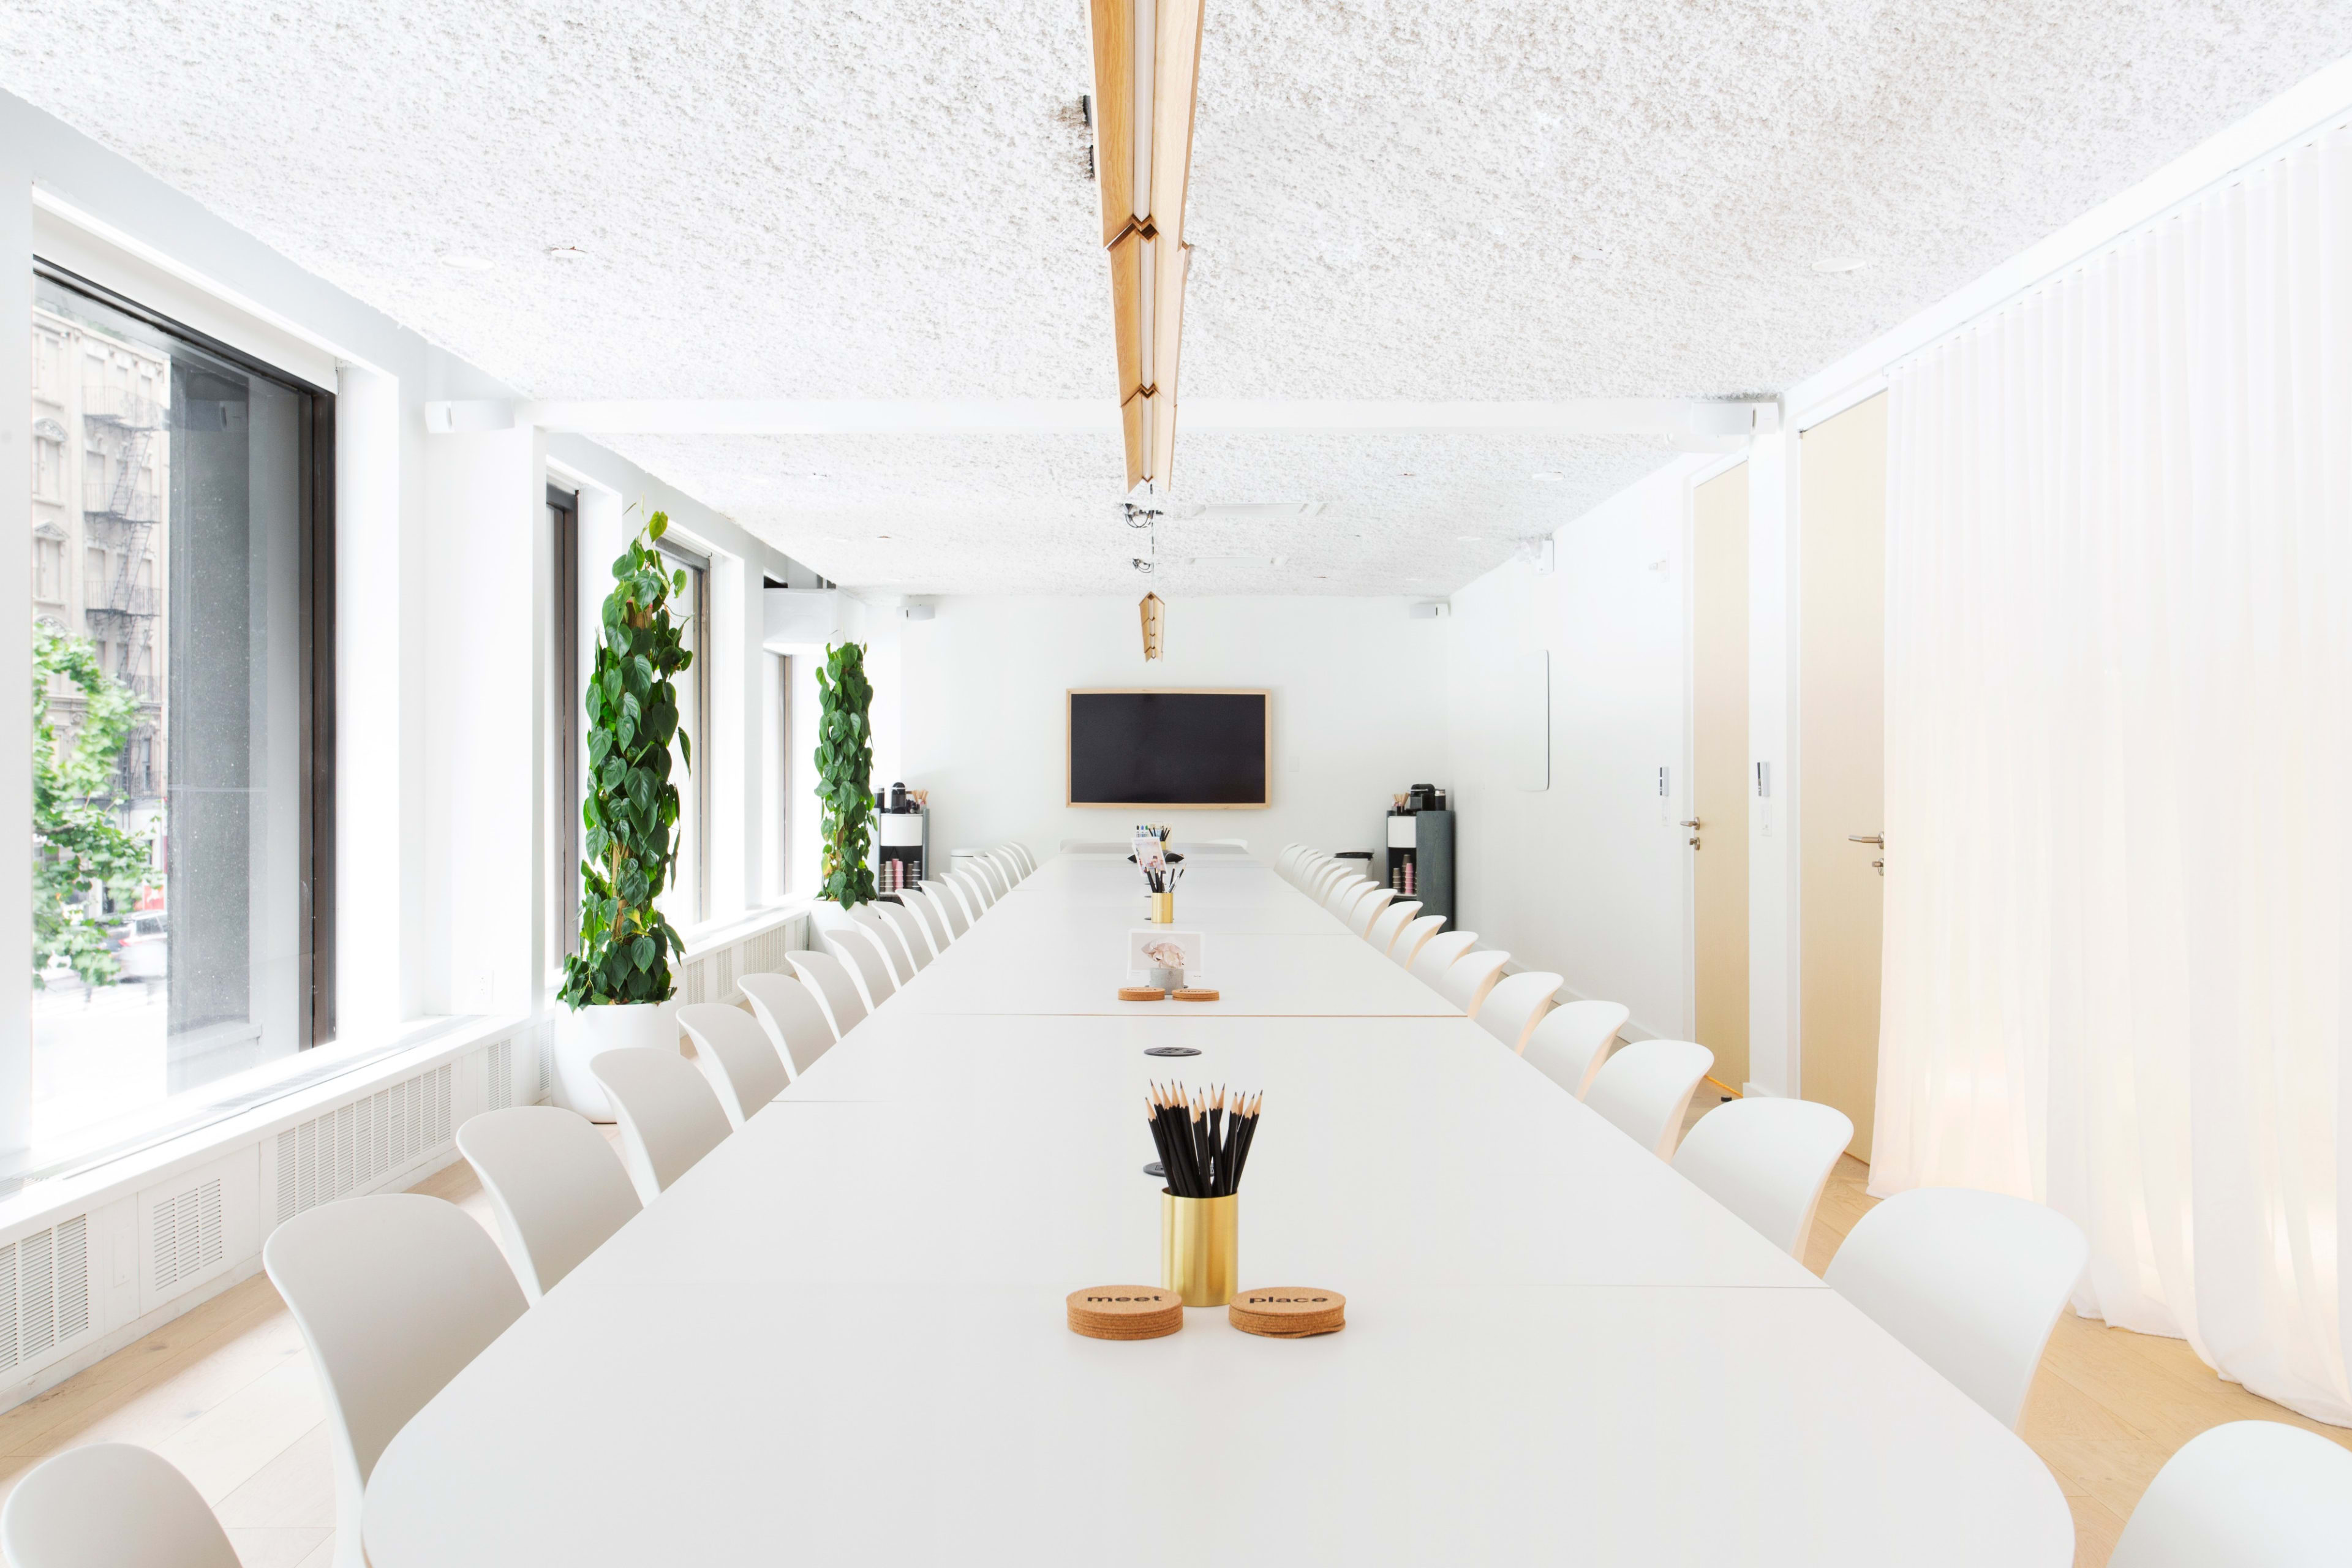 10 Best Meeting Rooms For Rent in San Francisco, CA | Peerspace